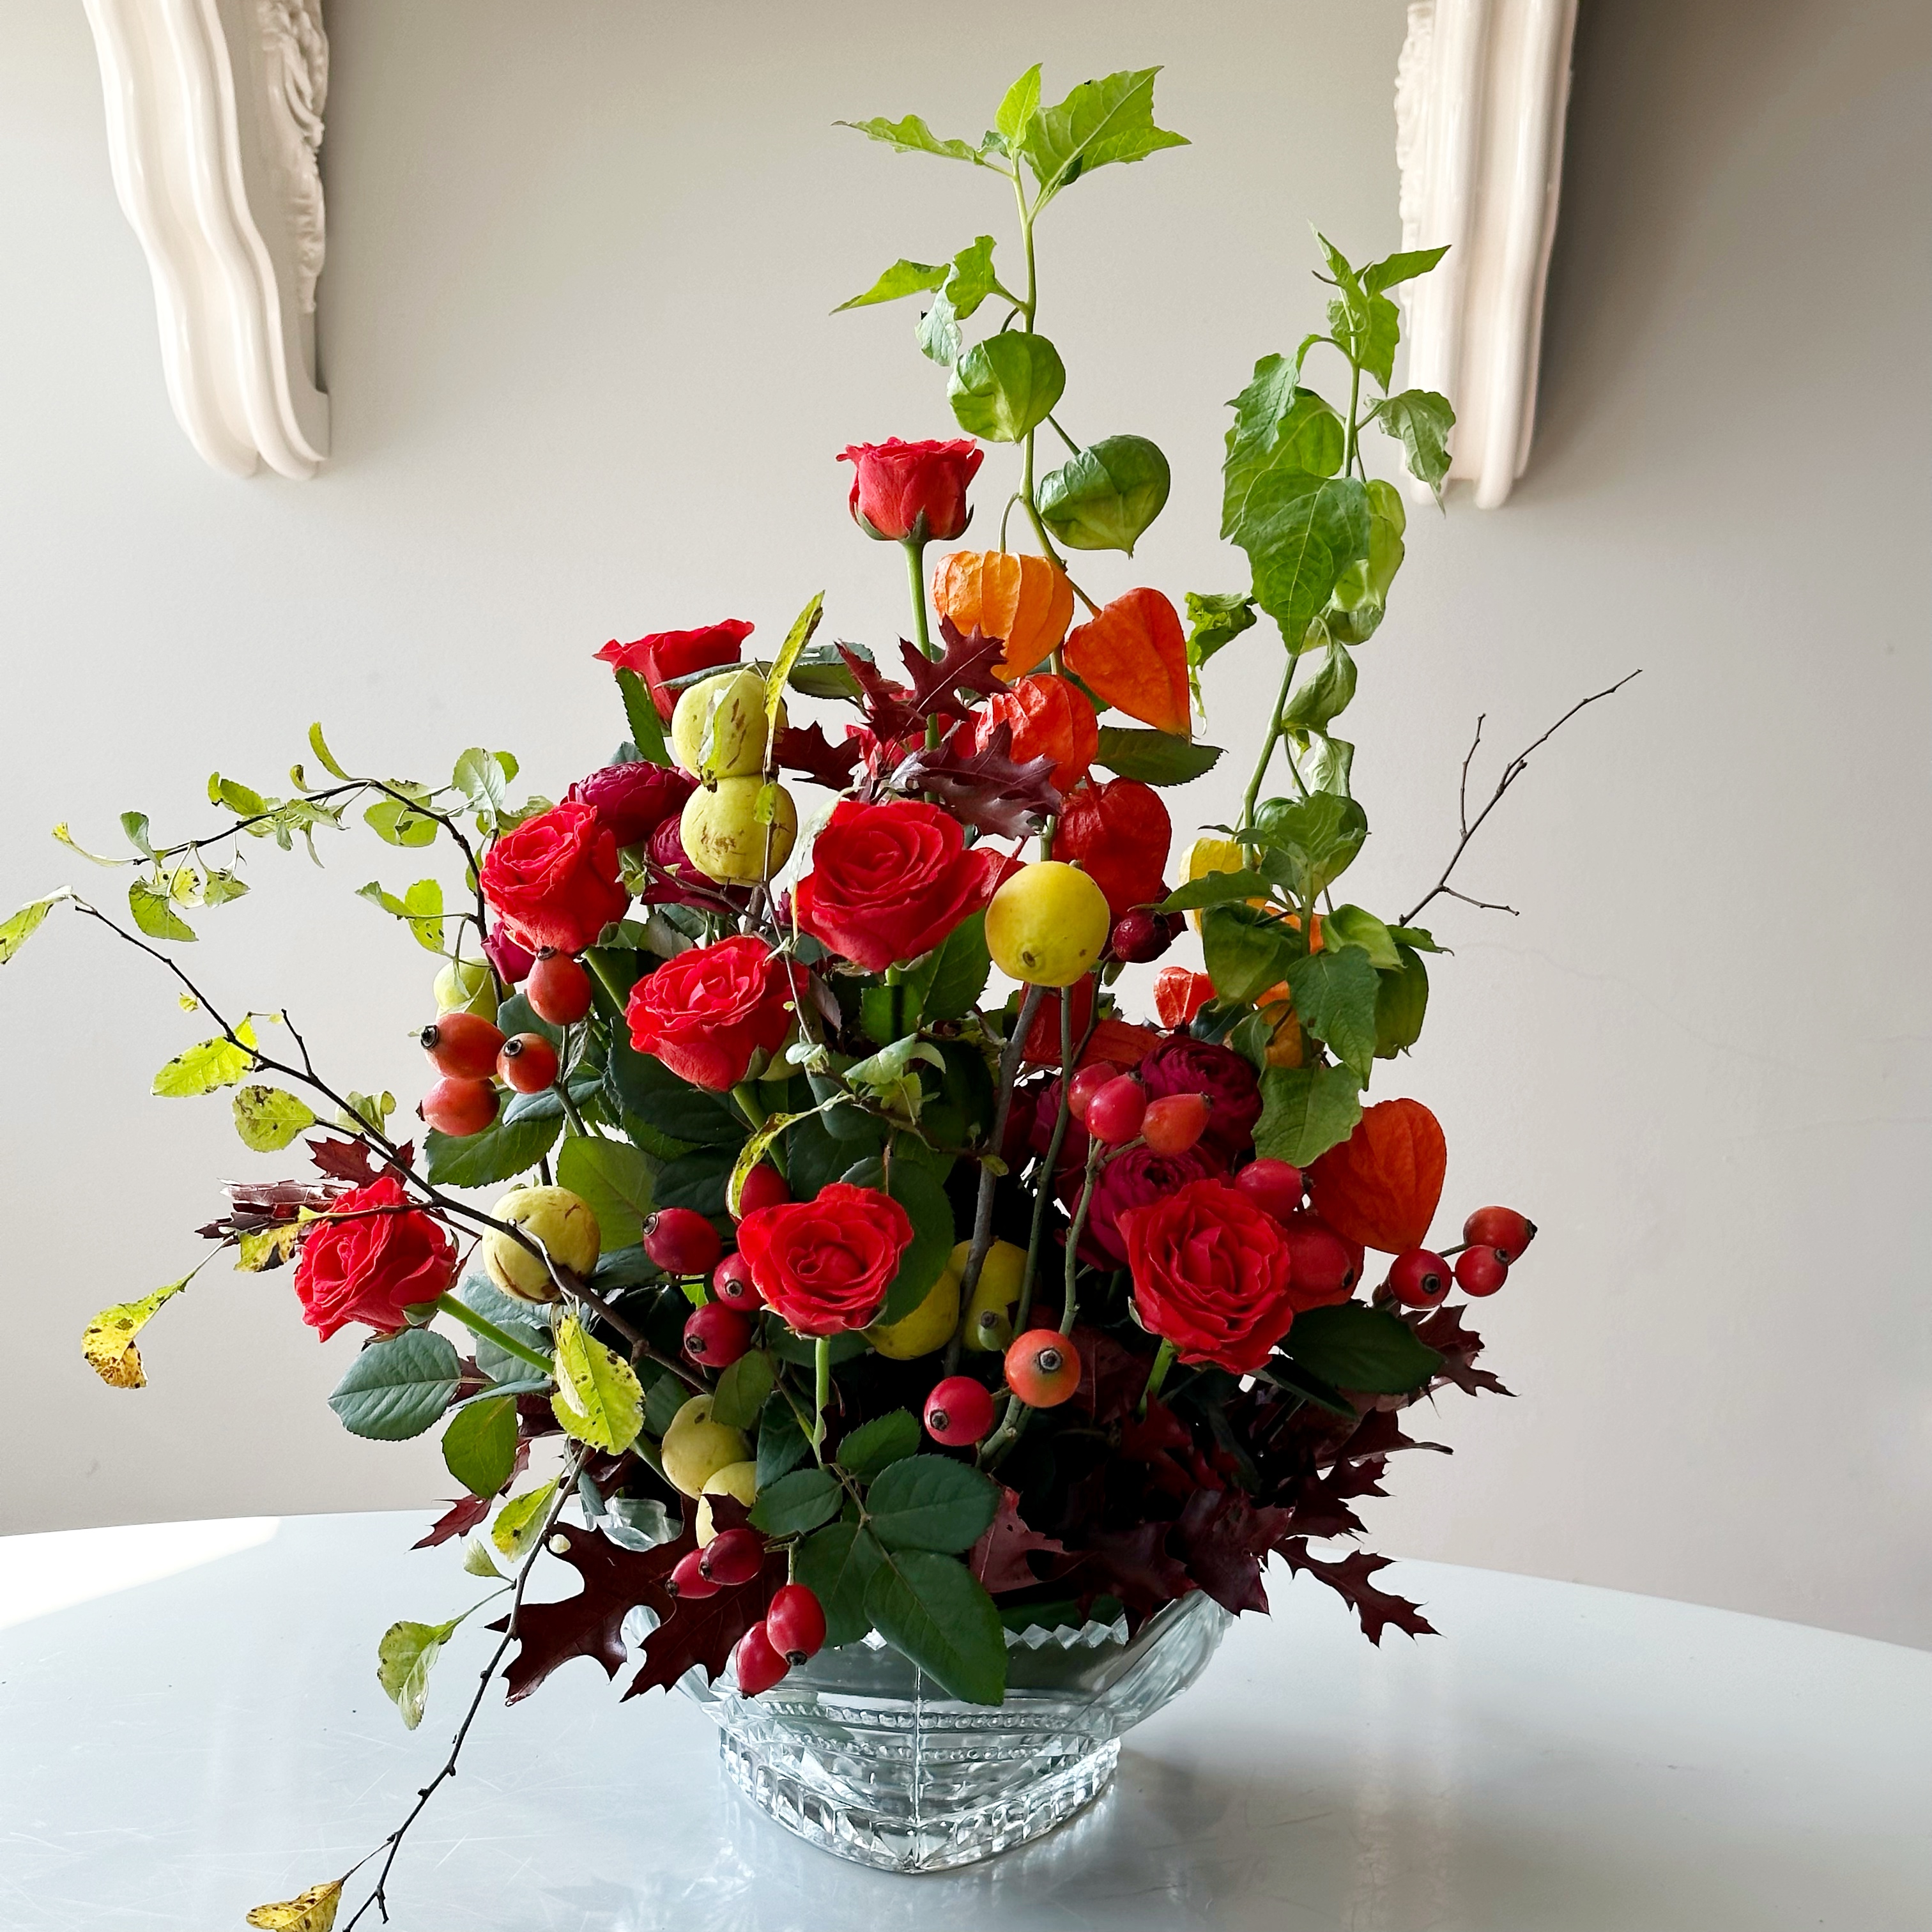 Workshop “Autumn garden in a vase"